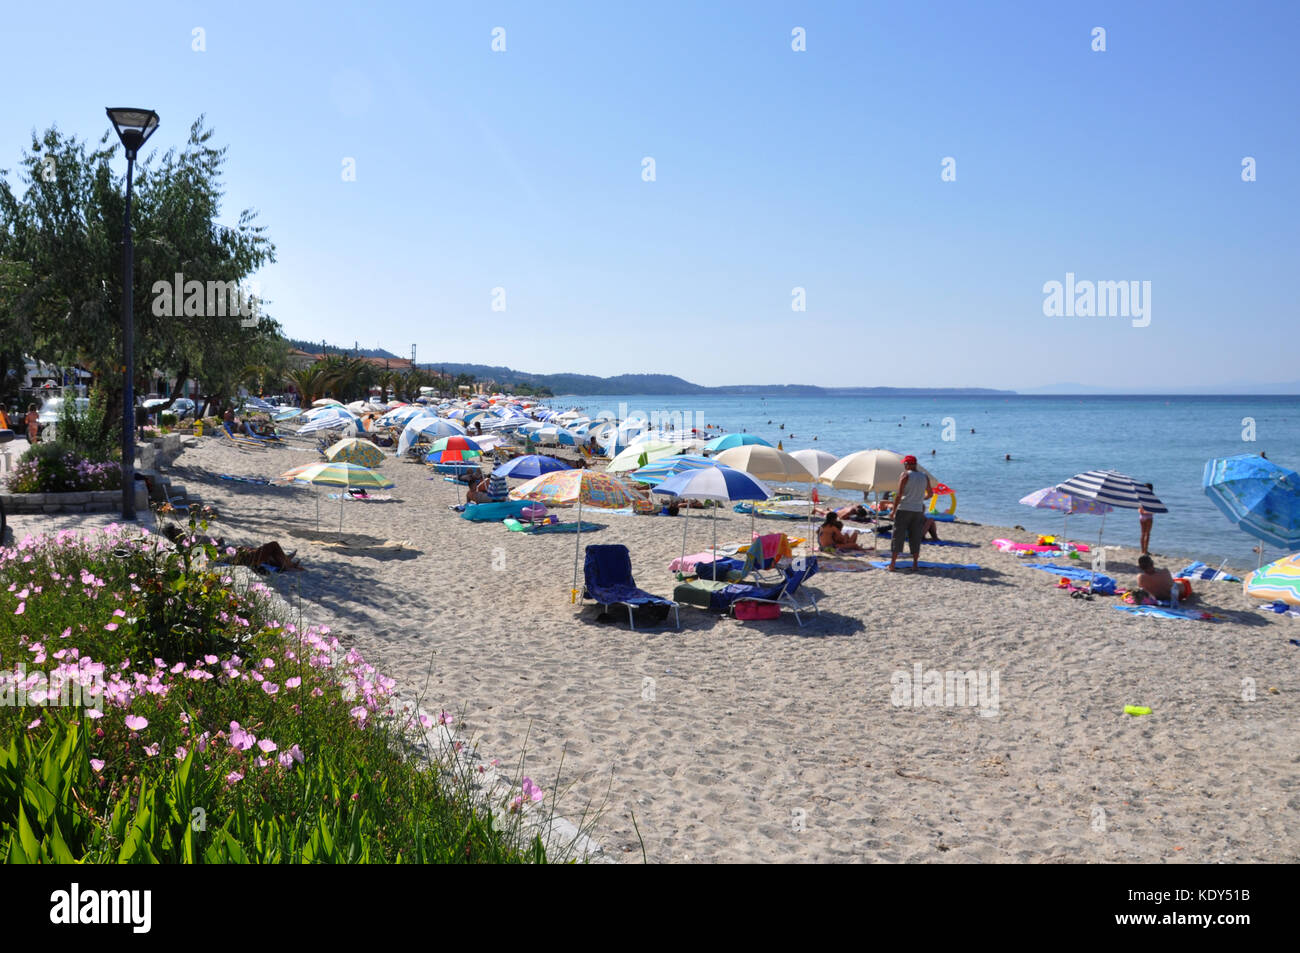 Spiaggia del villaggio di polychrono in penisola Kassandra di Halkidiki grecia Foto Stock